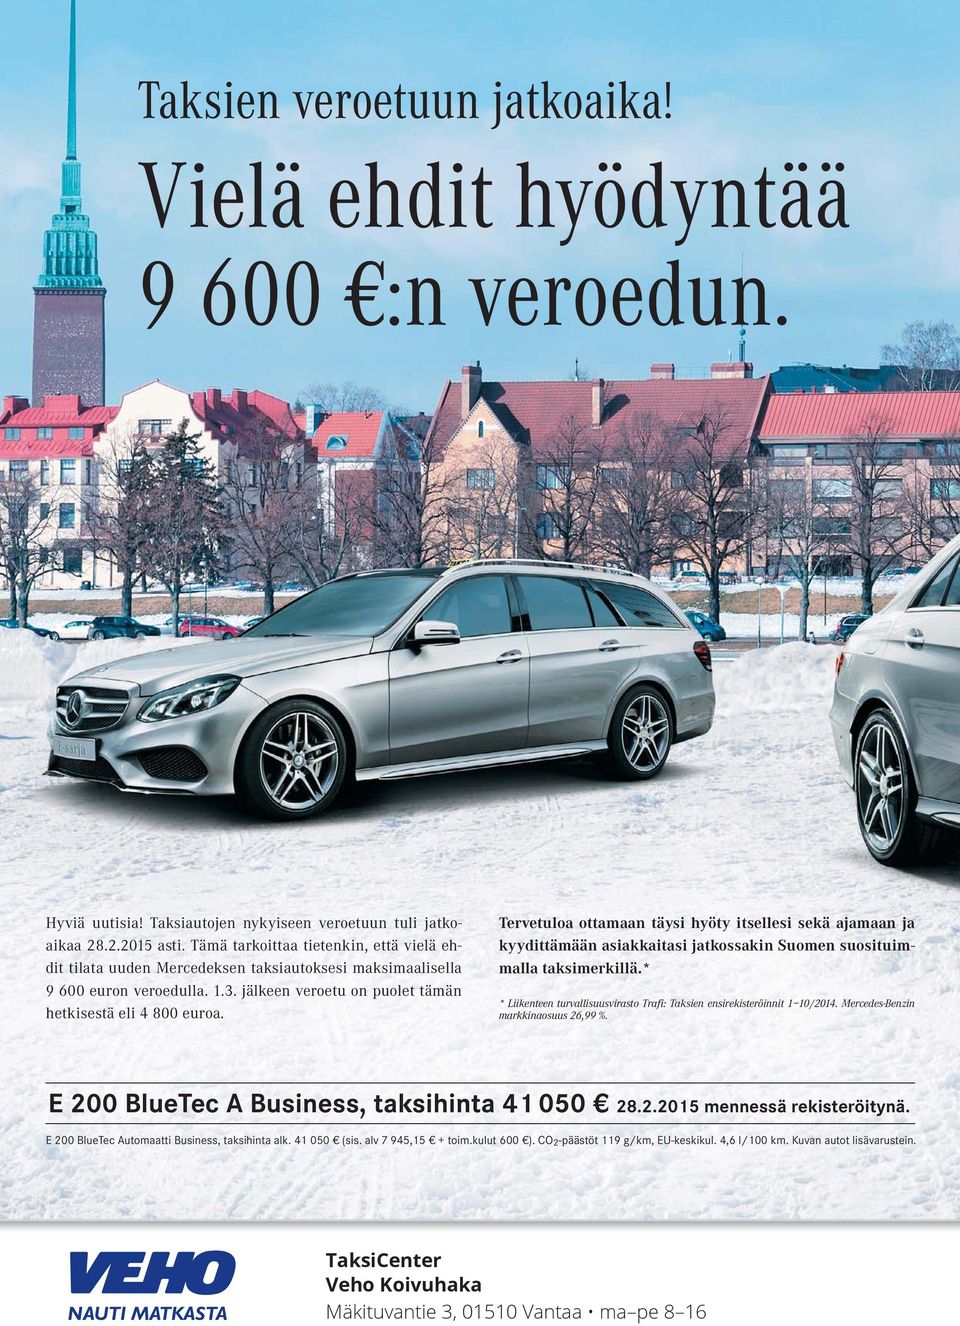 Tervetuloa ottamaan täysi hyöty itsellesi sekä ajamaan ja kyydittämään asiakkaitasi jatkossakin Suomen suosituimmalla taksimerkillä.